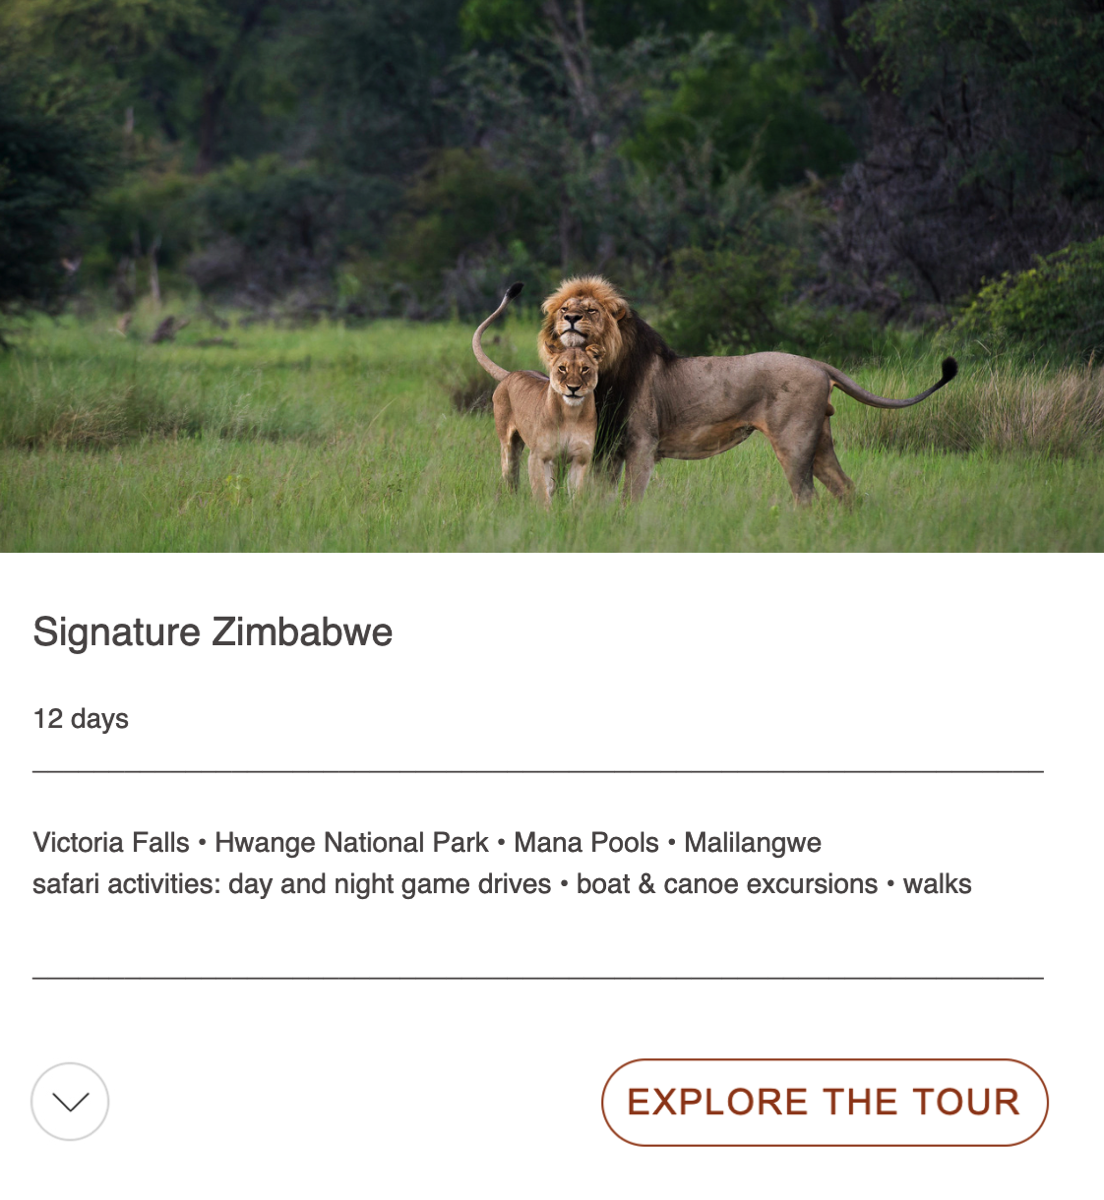 sugnature zimbabwe tour